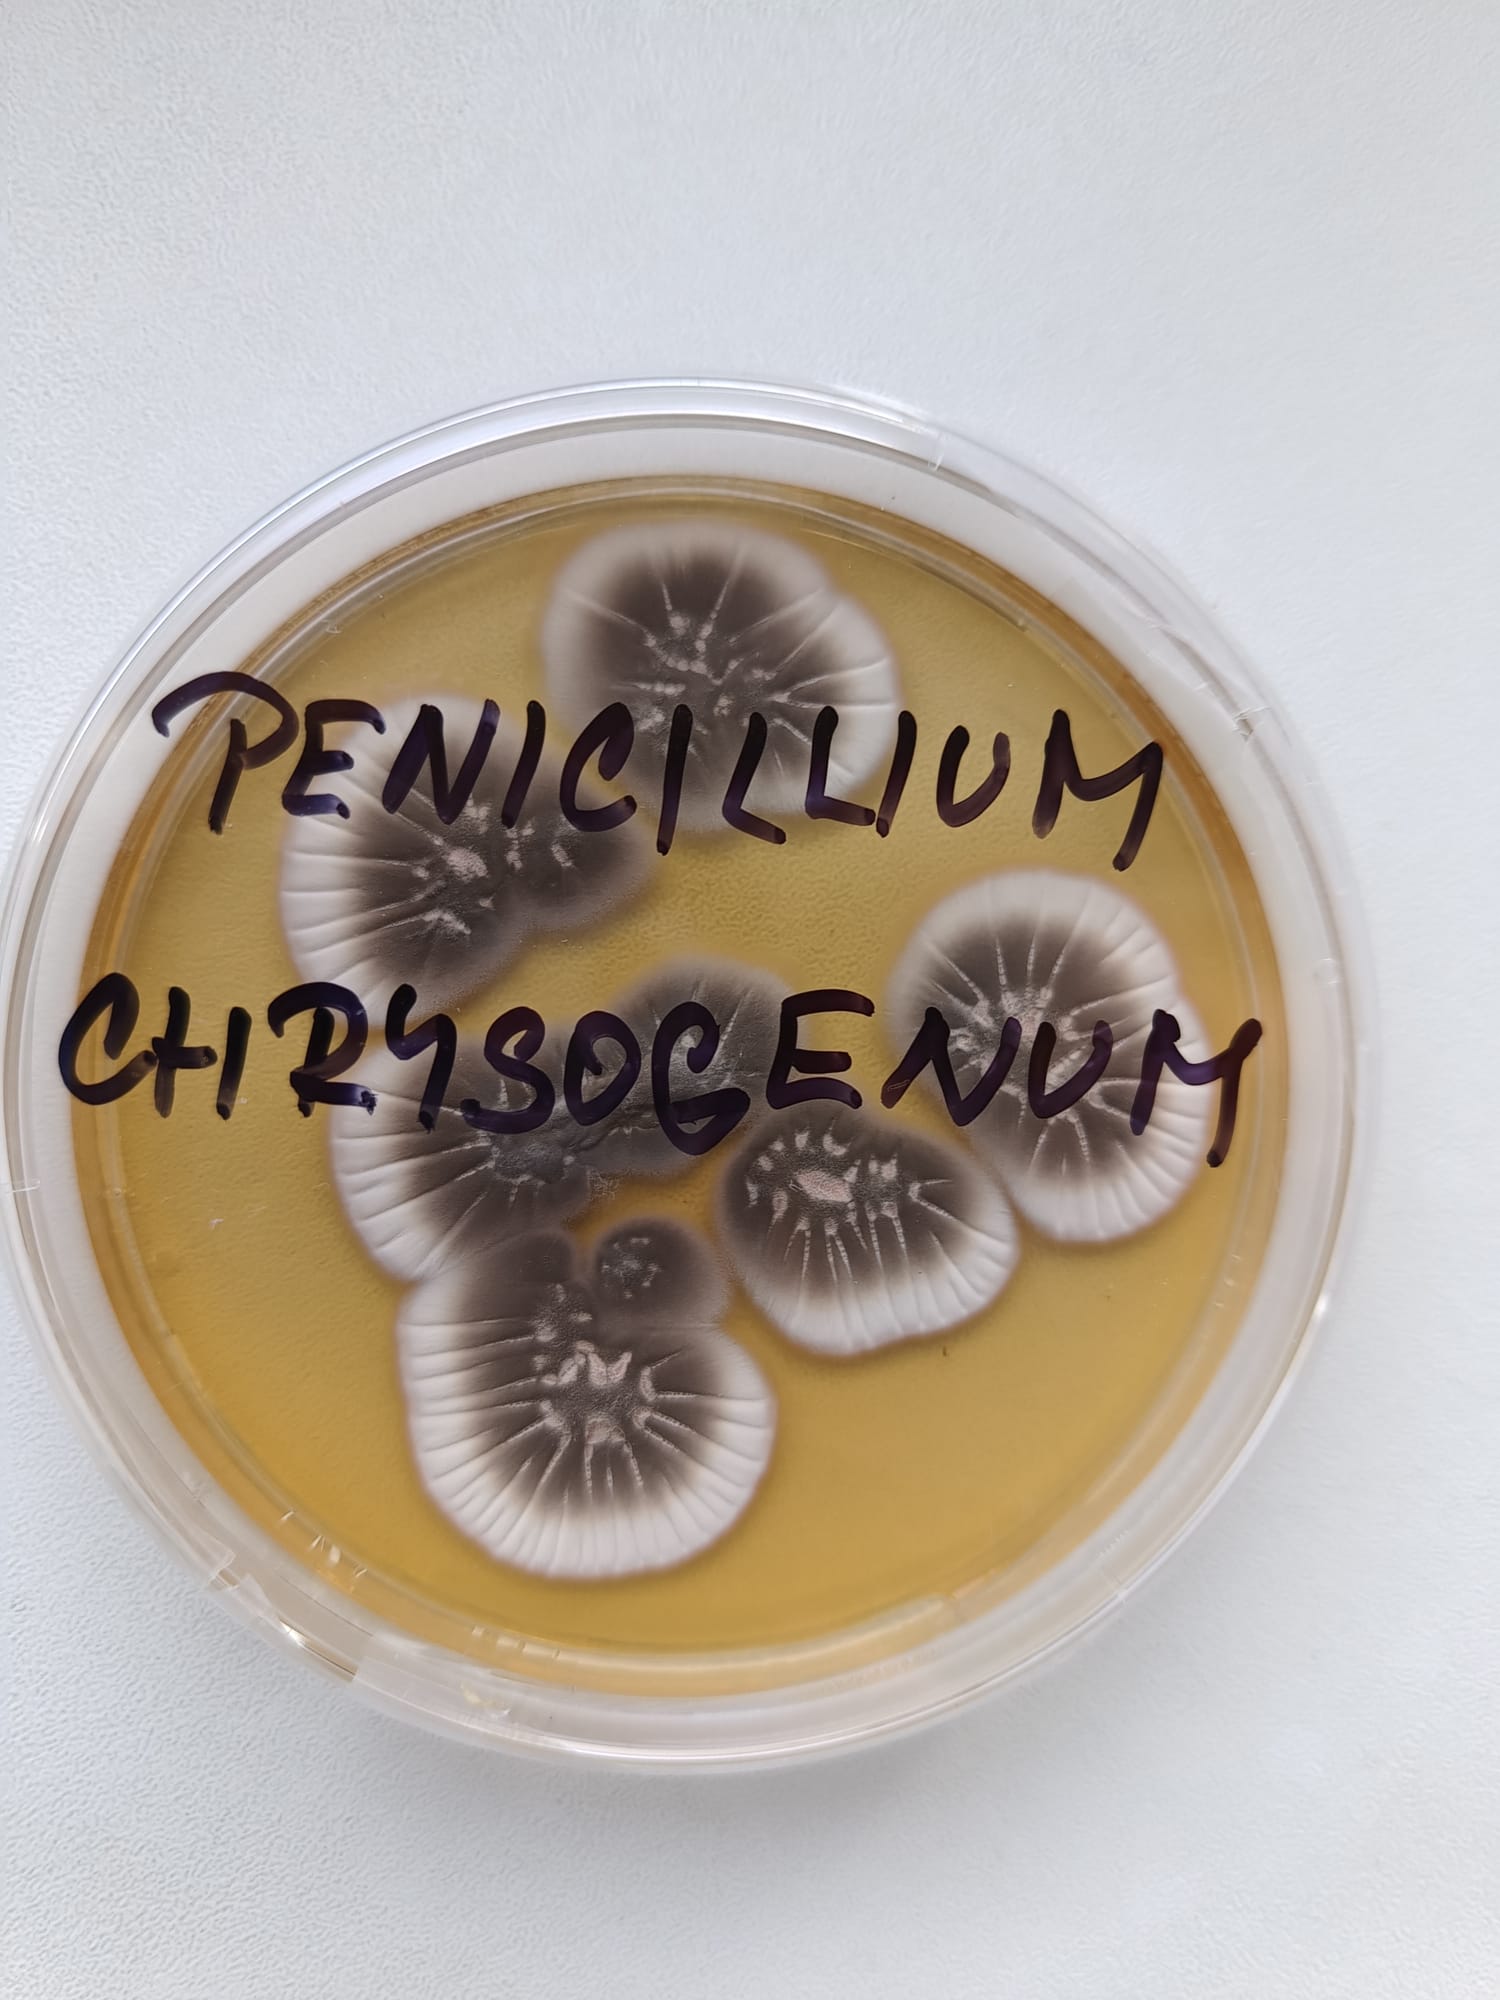 Penicillium chrysogenum